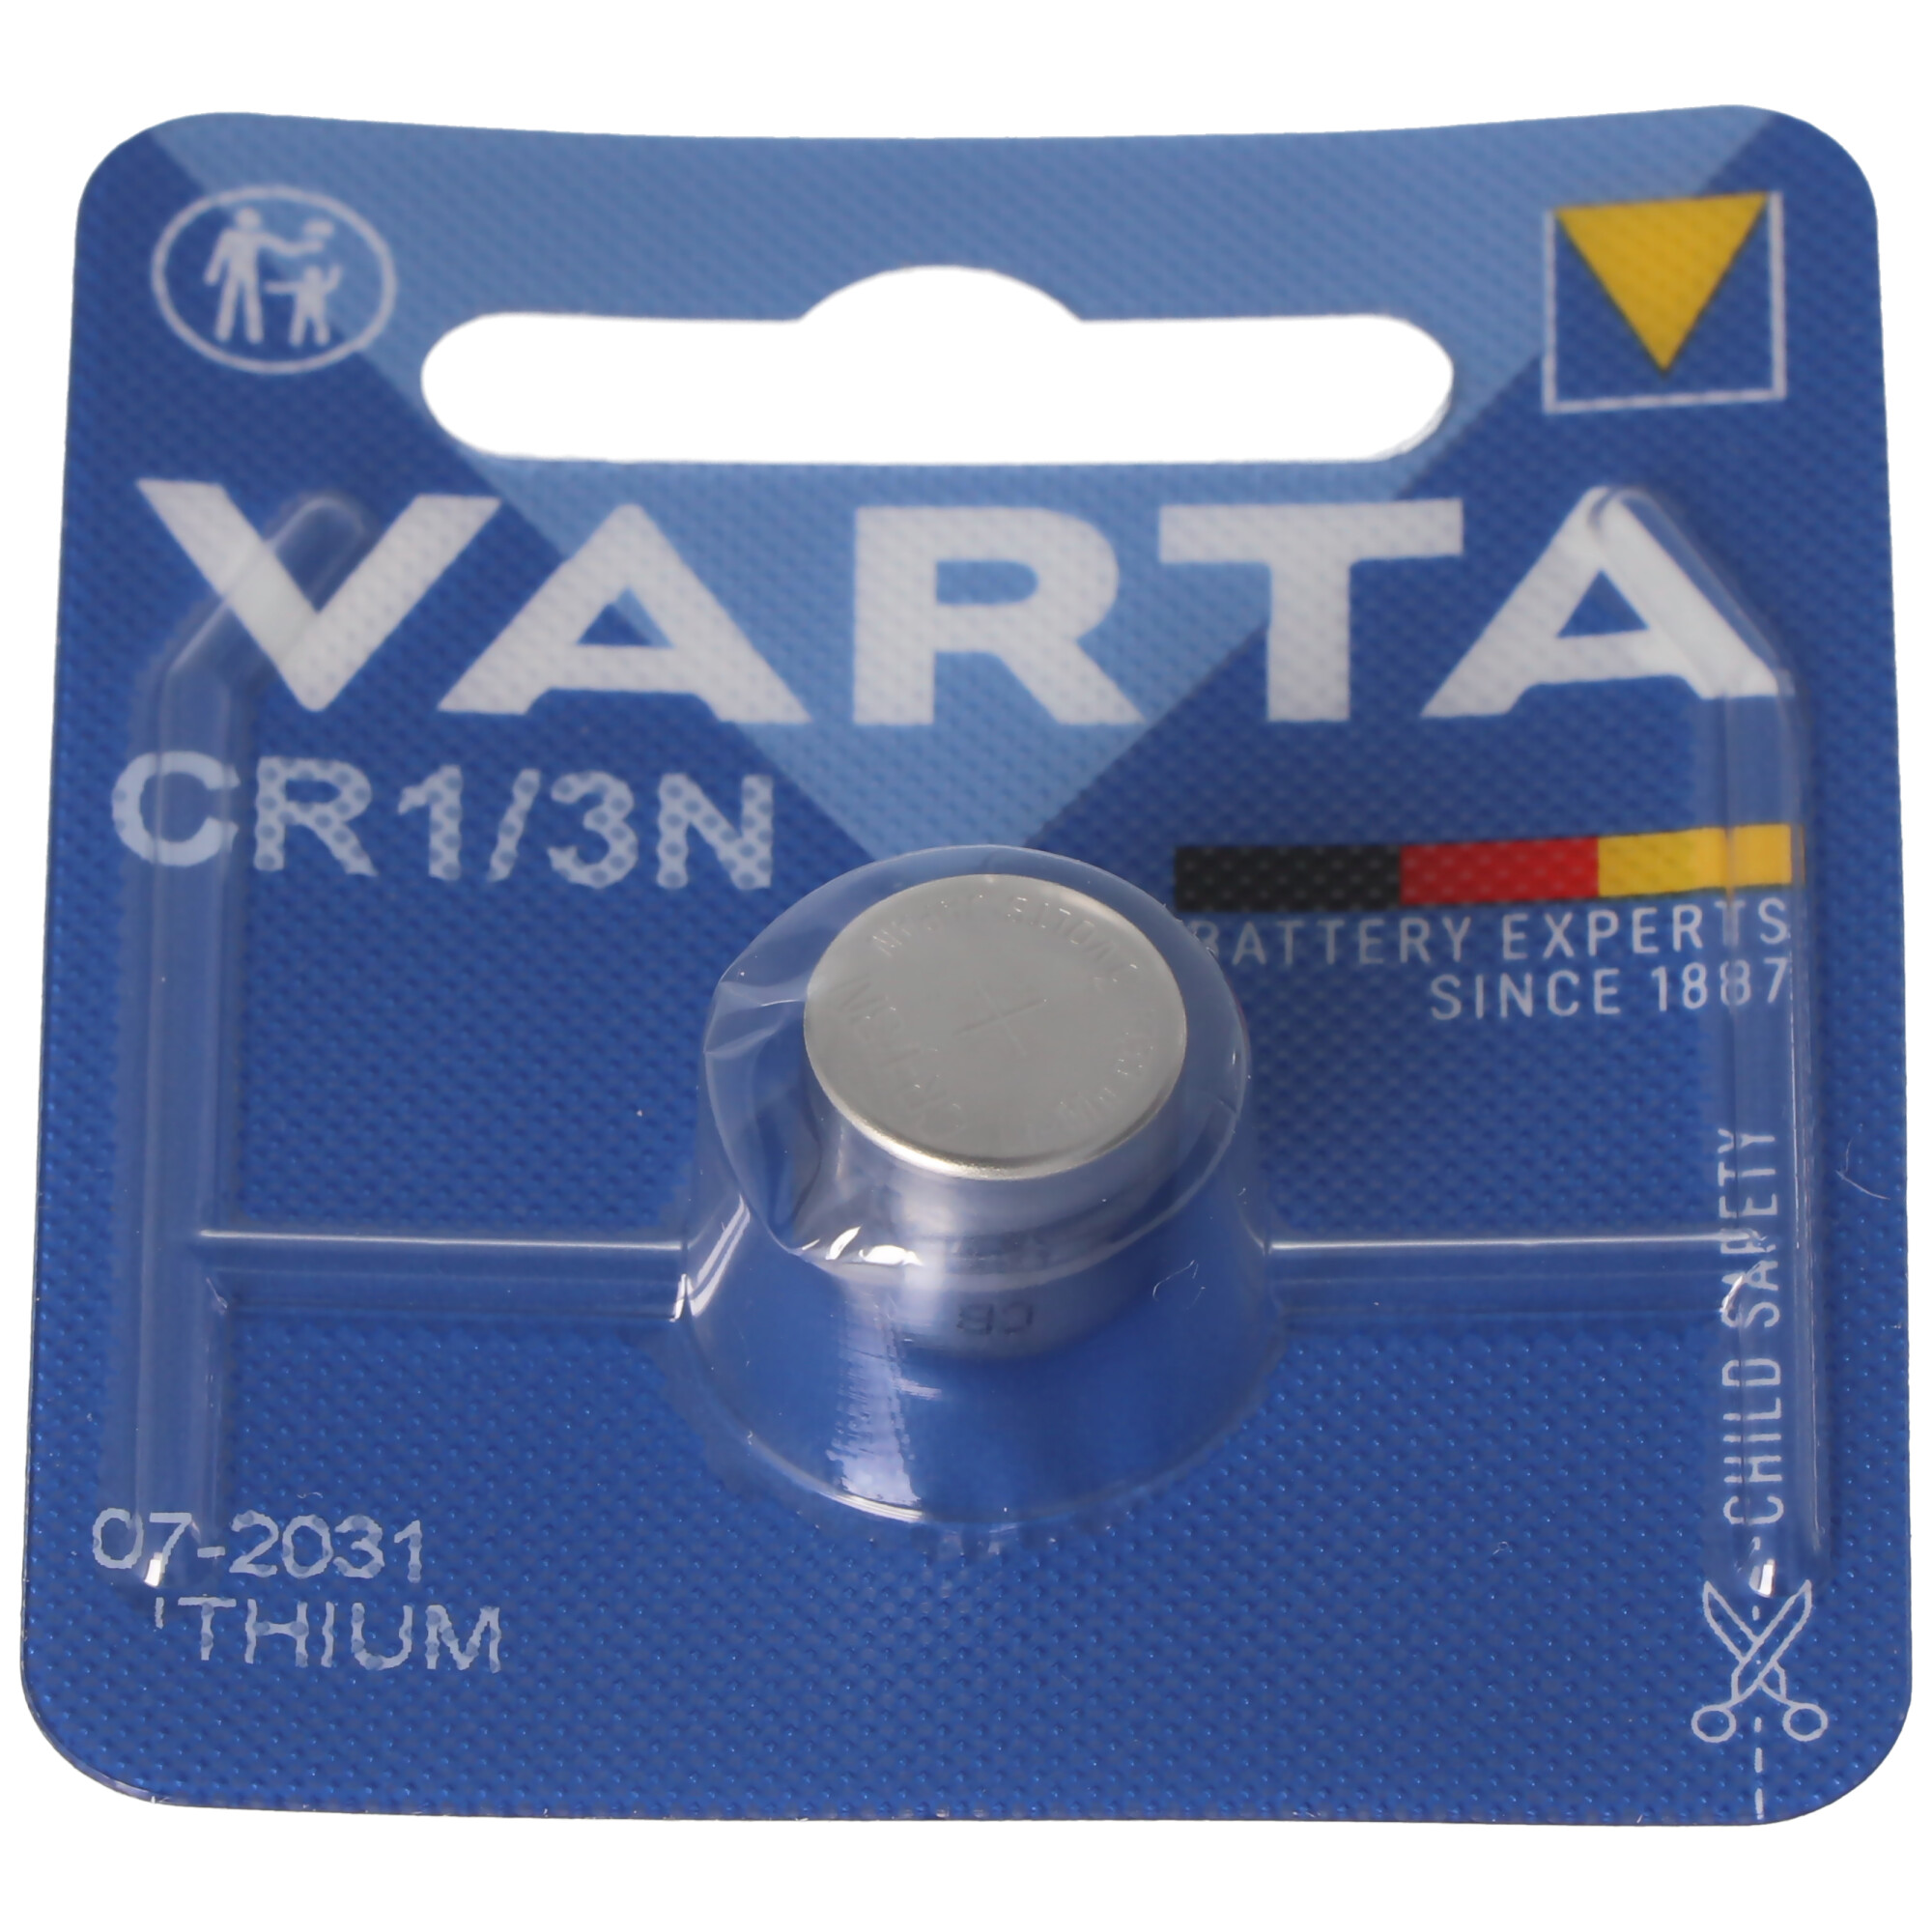 Varta CR1/3N Photo Lithium Batterie 06131101401, GPCR1/3N, CR11108, 2L76